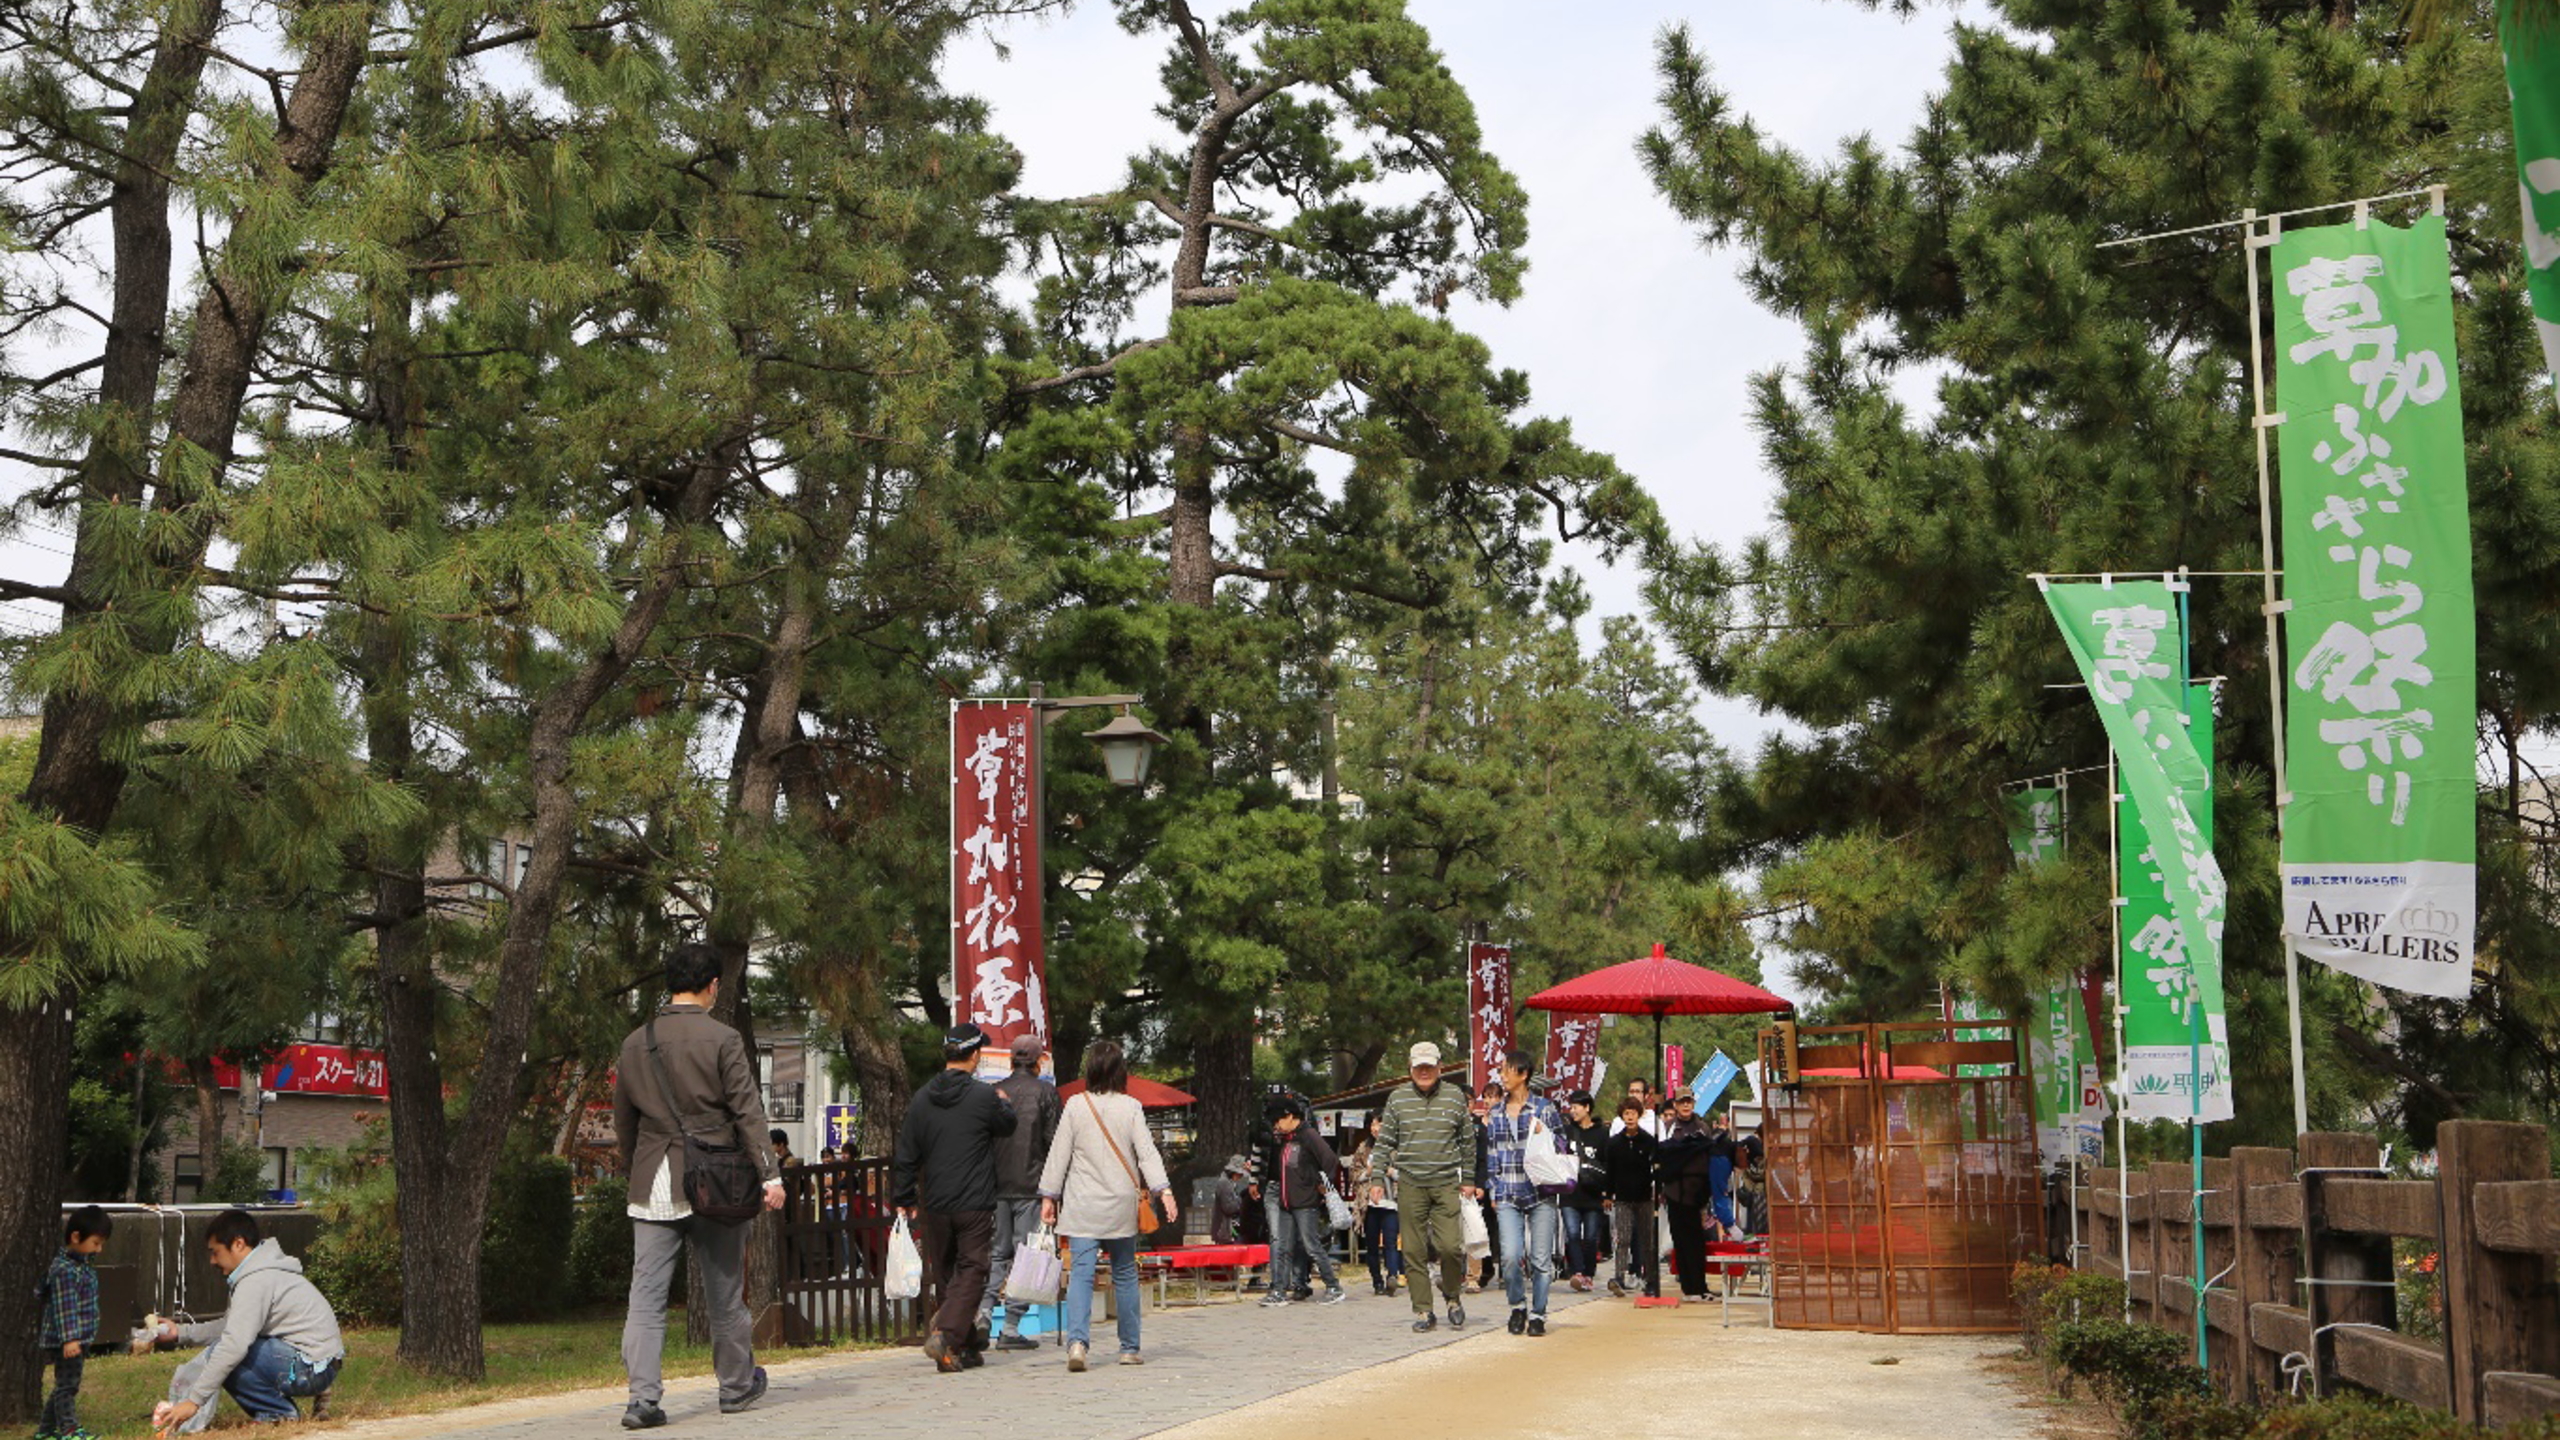 【草加ふささら祭り】草加松原遊歩道とまつばら綾瀬川公園で毎年秋頃に開催されるお祭りです。